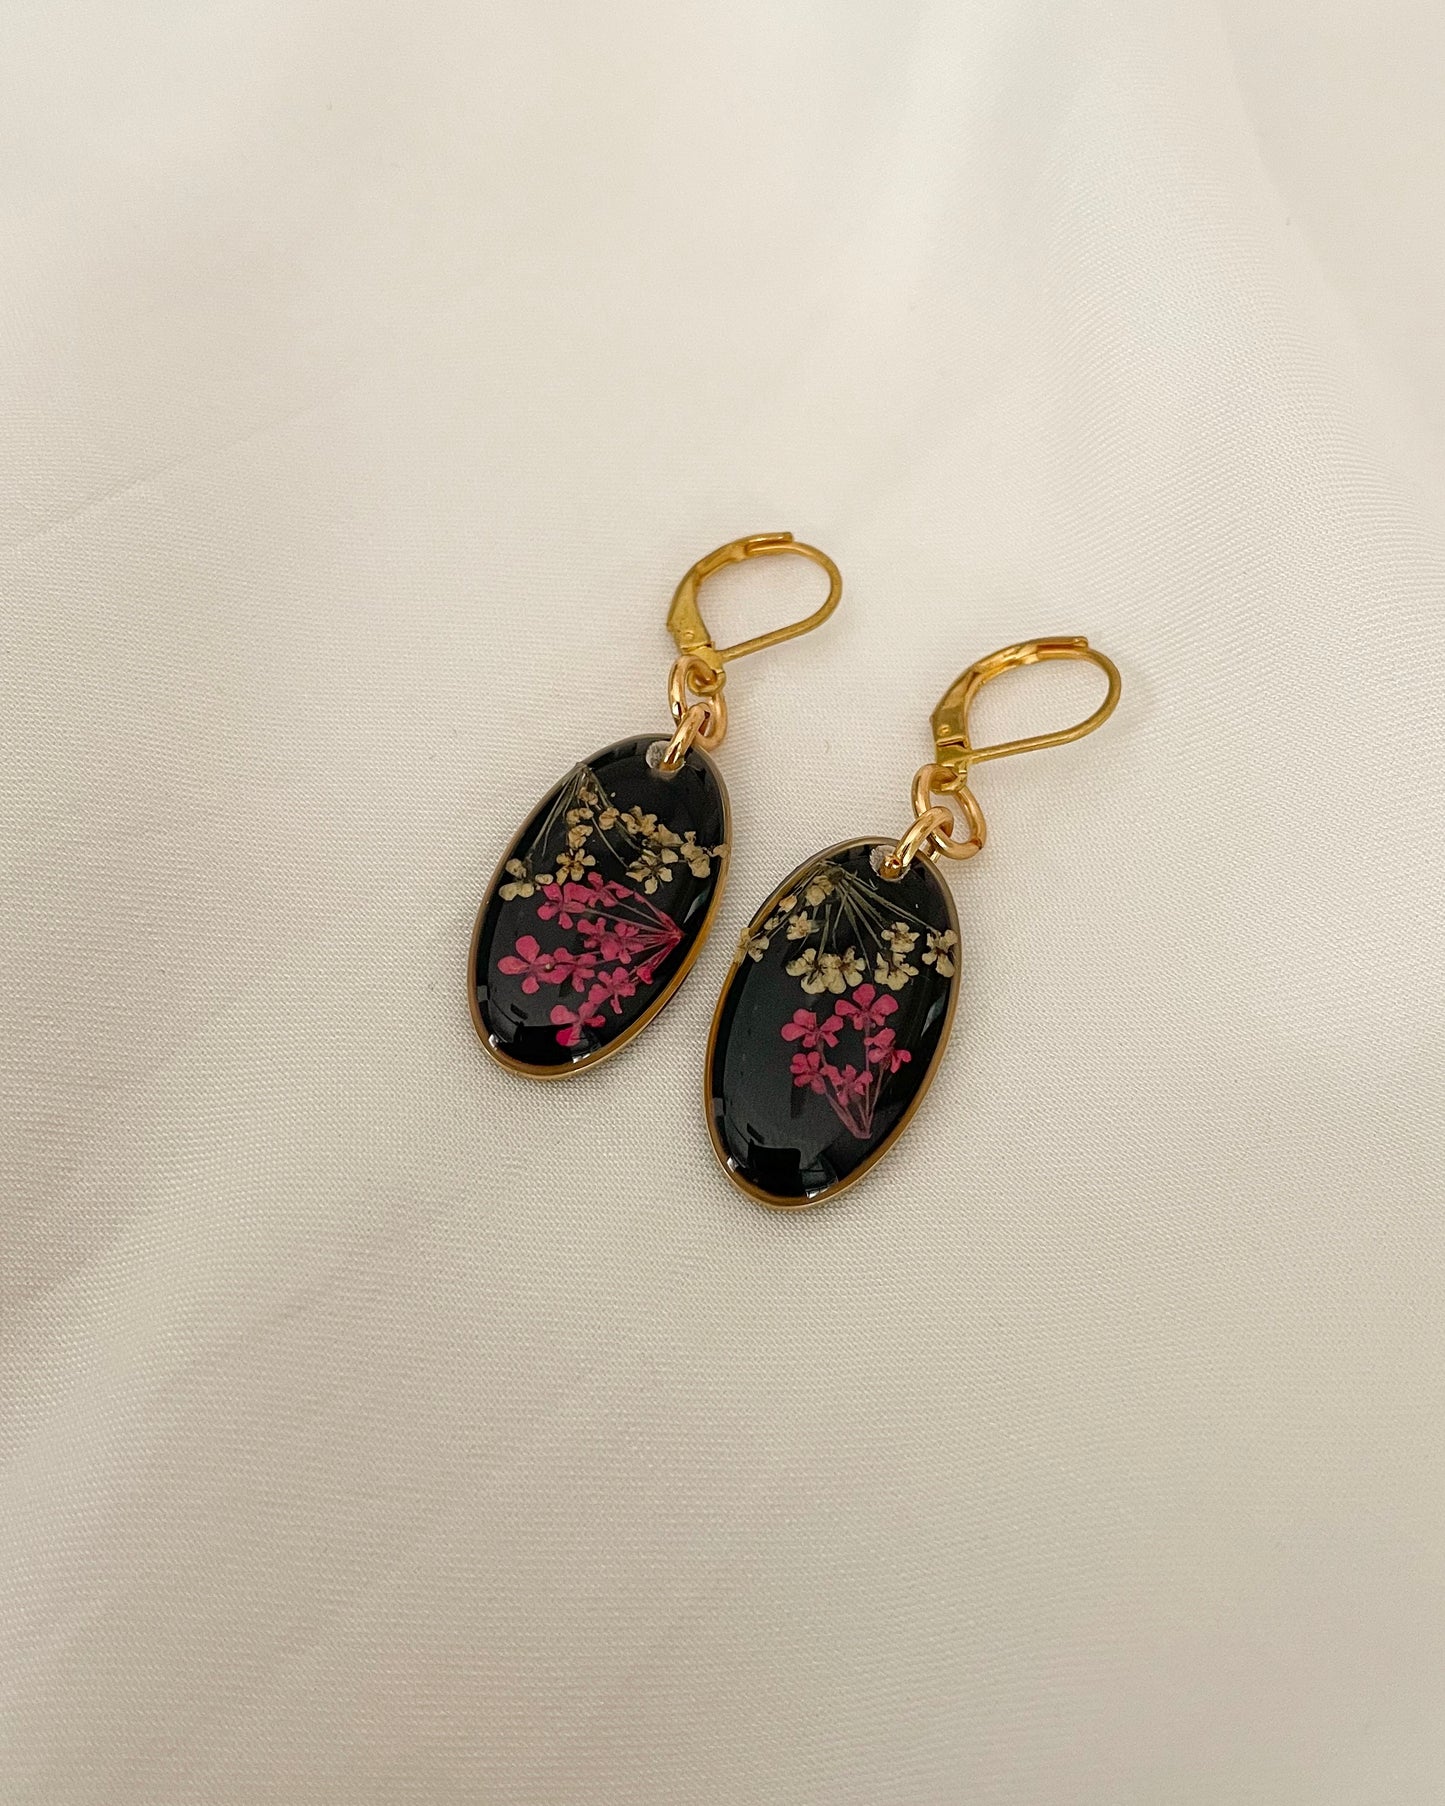 Queen Anne's Lace Earrings